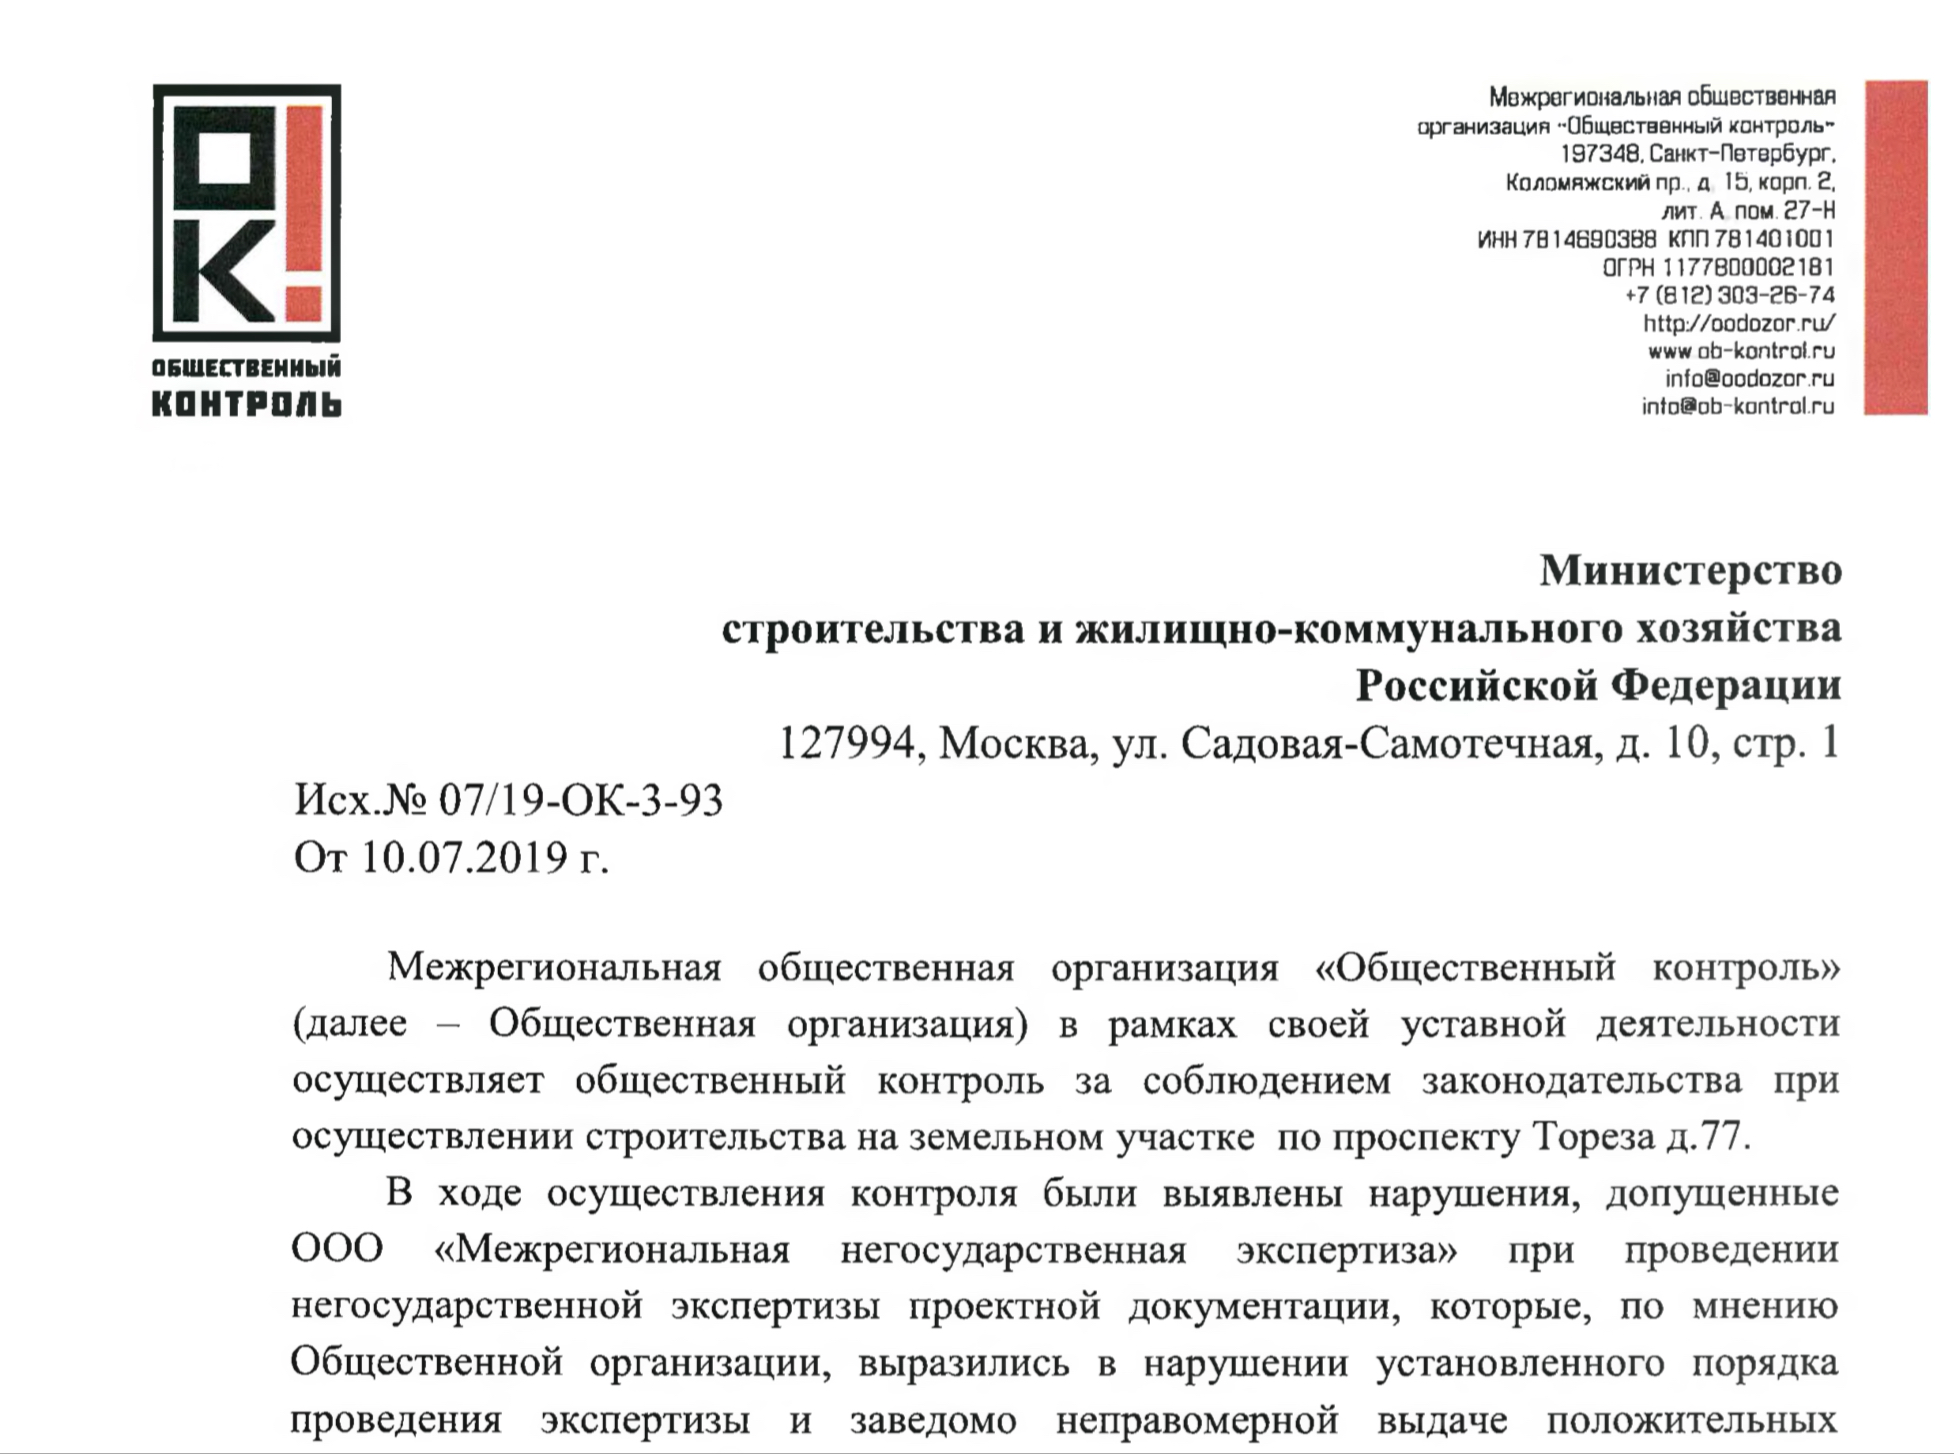 Обращение МОО «Общественный контроль» в Министерство строительства и жилищно-коммунального хозяйства Российской Федерации